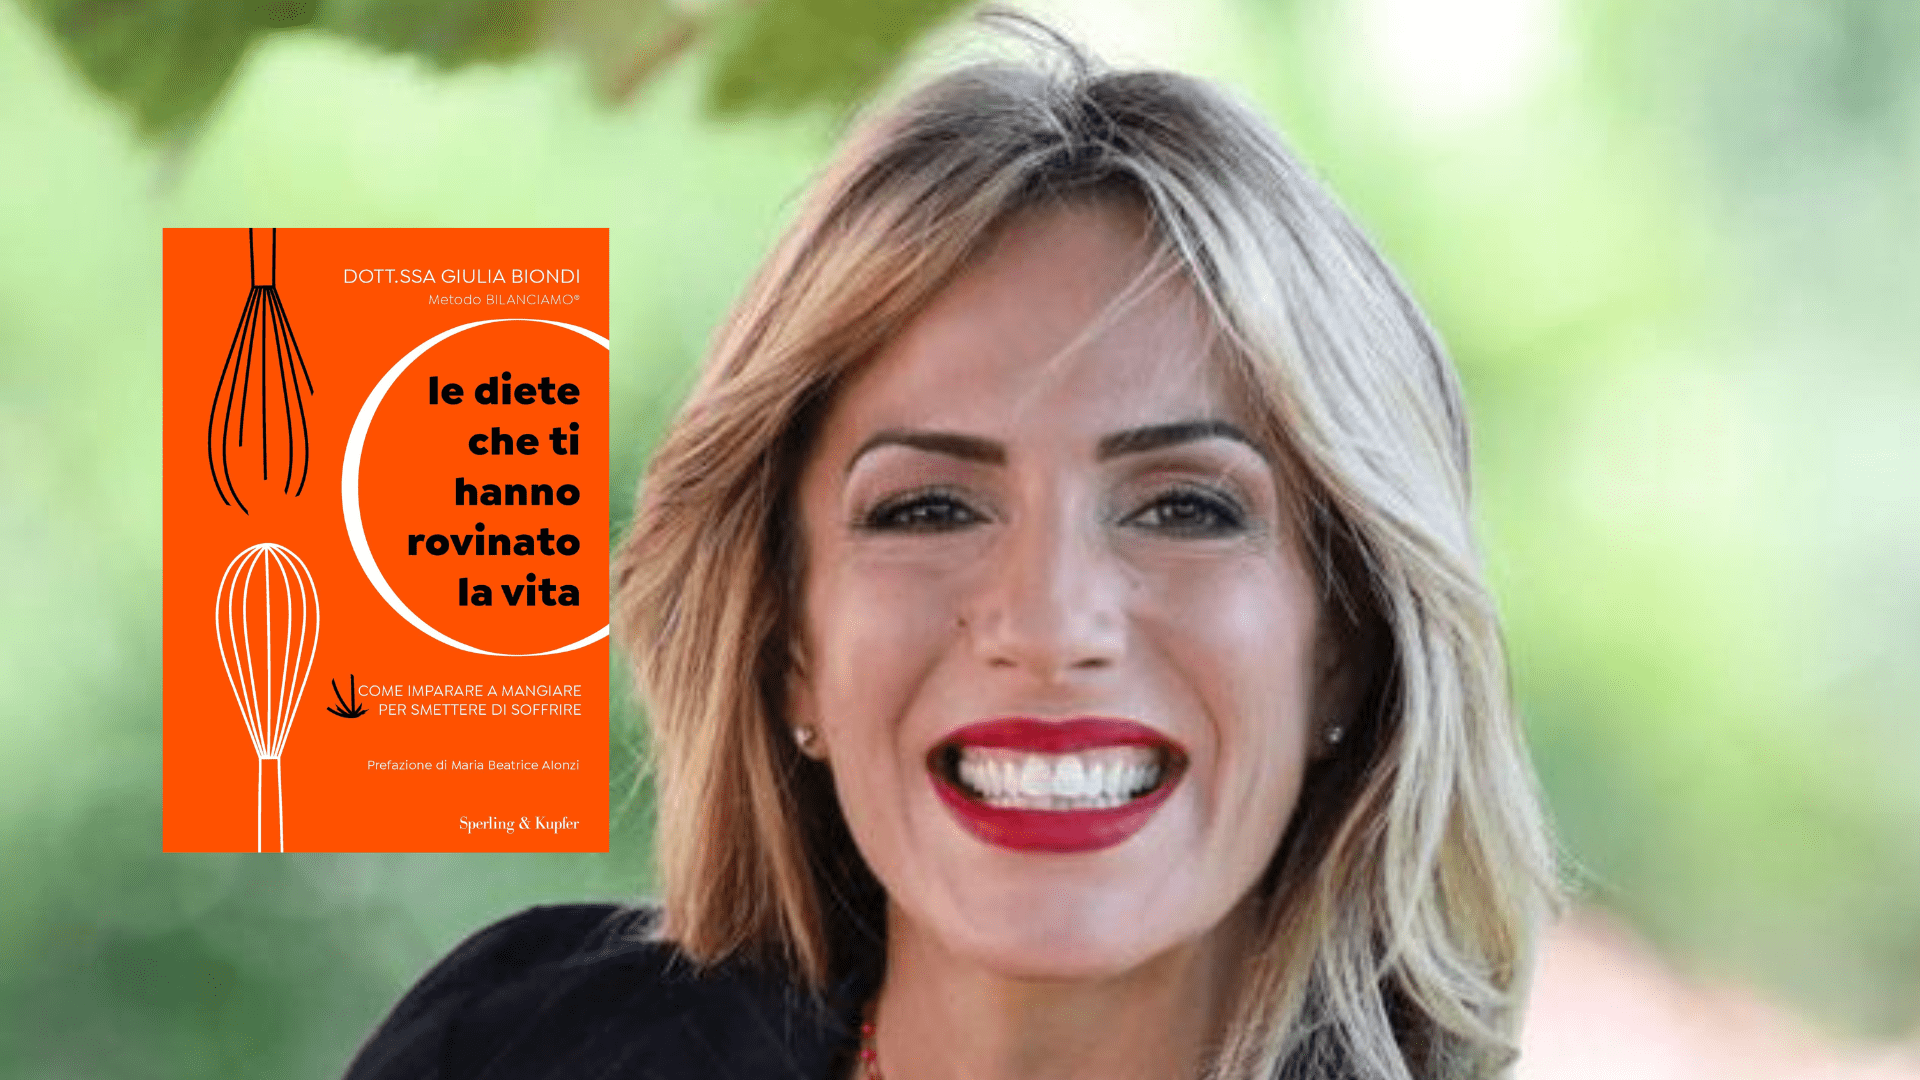 Giulia Biondi presenta “Le diete che ti hanno rovinato la vita